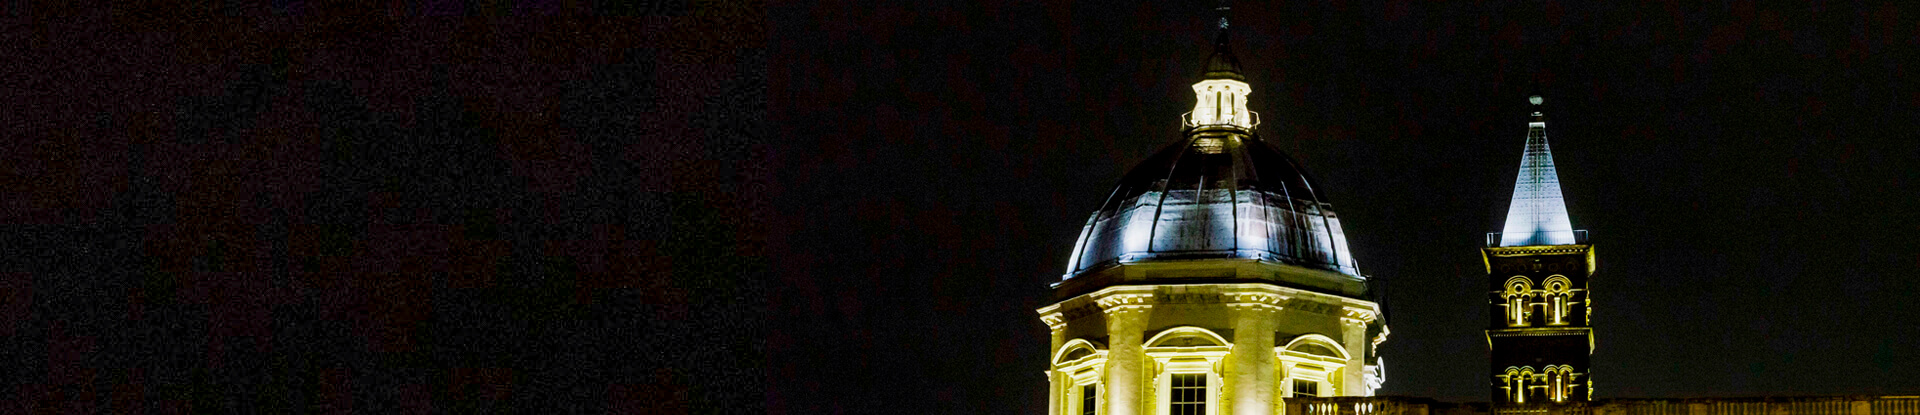 Acea, lighting up Basilica of Santa Maria Maggiore